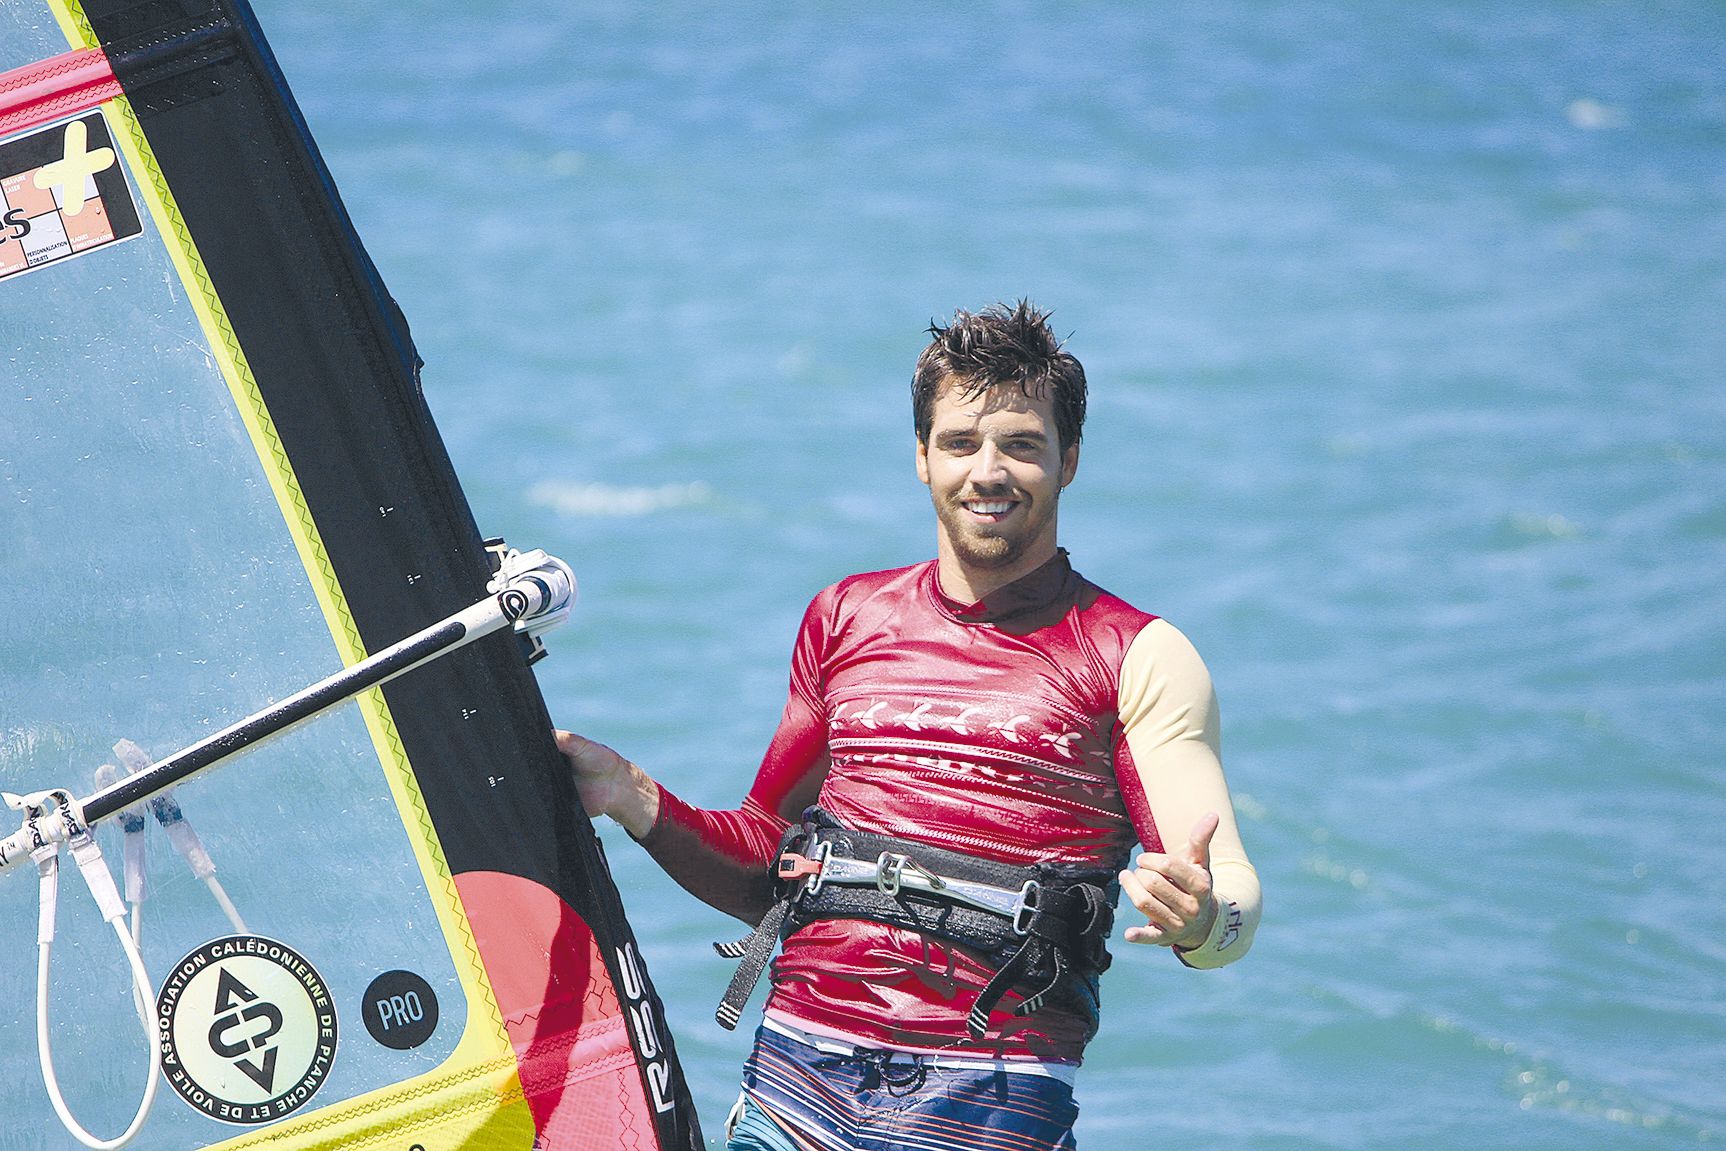 Si Antoine Albert s’est spécialisé en freestyle, il aime aussi faire du windsurf dans les vagues quand il en a l’occasion.